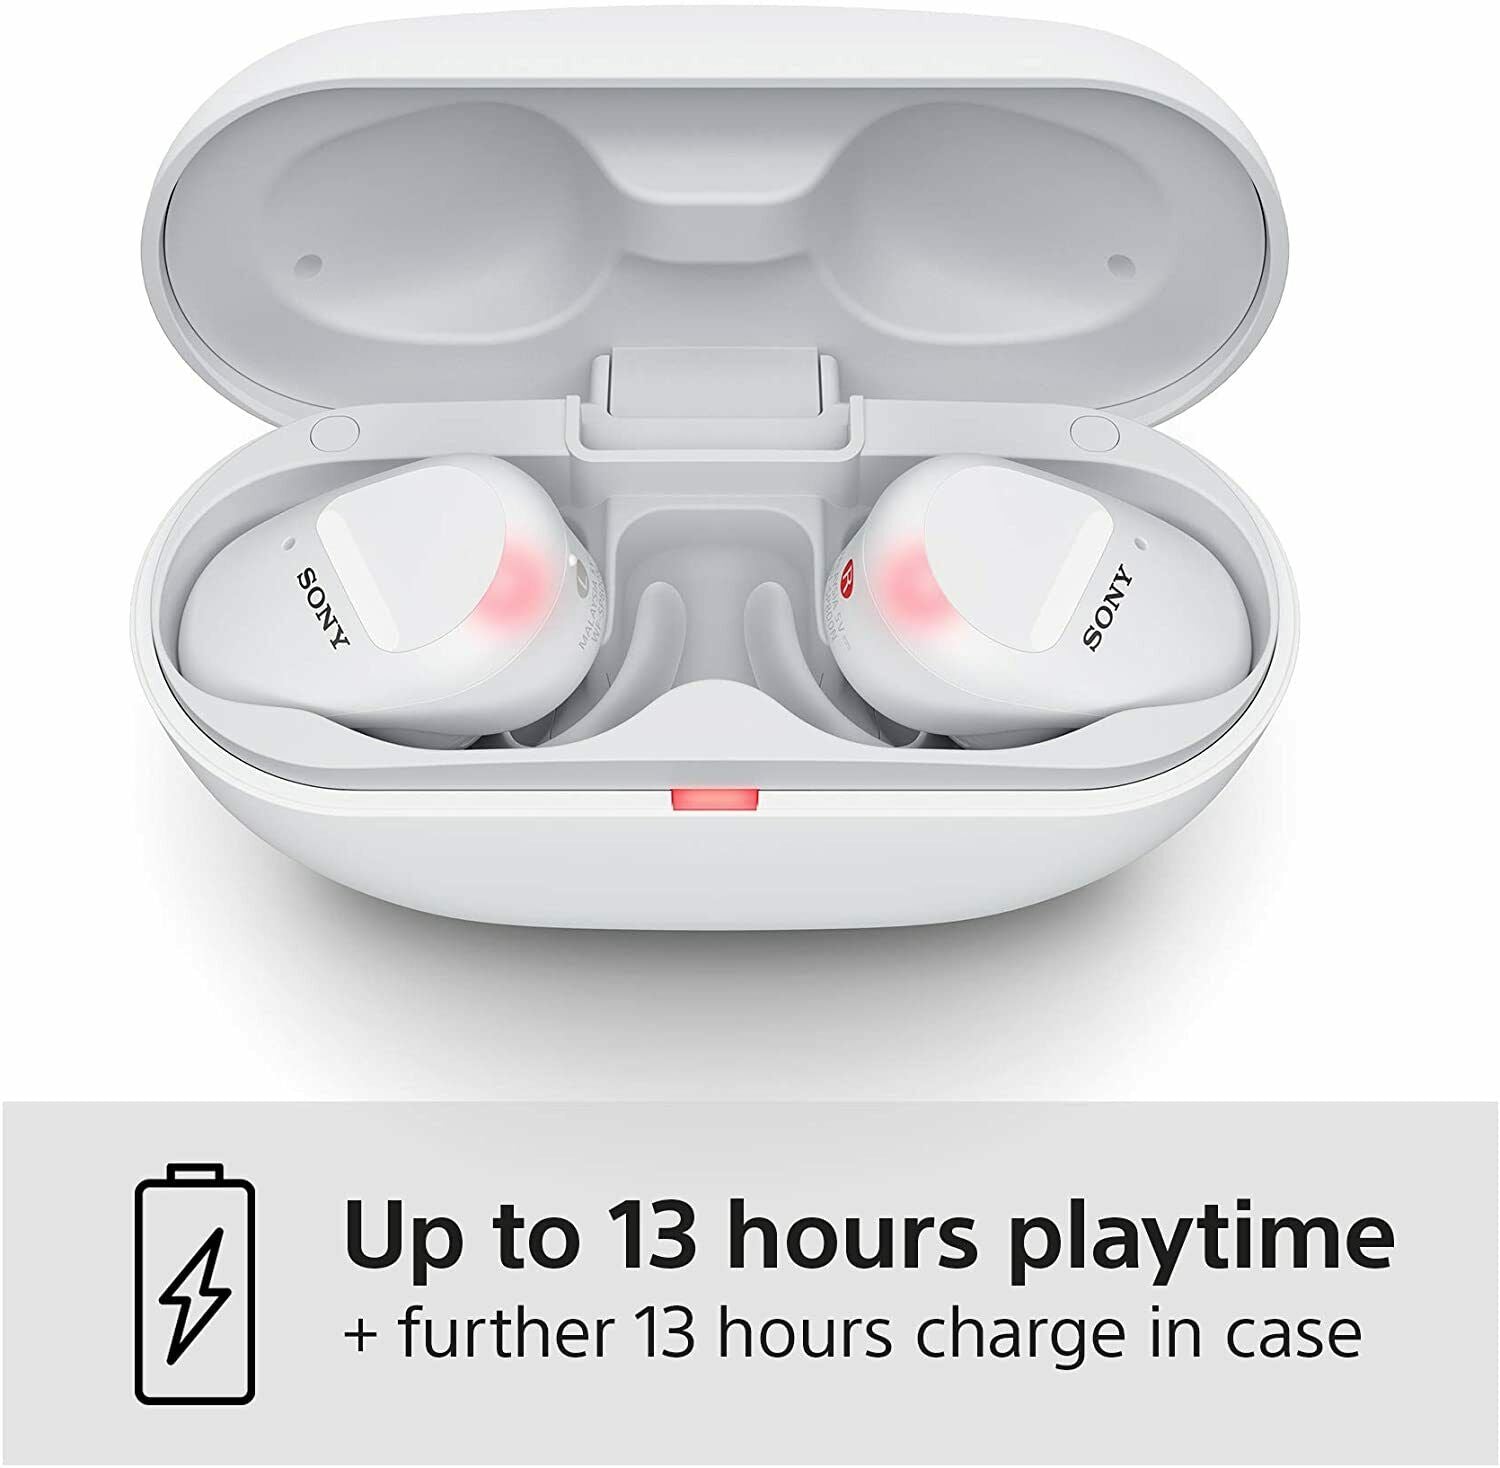 Sony WF-SP800N Truly Wireless Sports In-Ear Noise Canceling Headphones, White